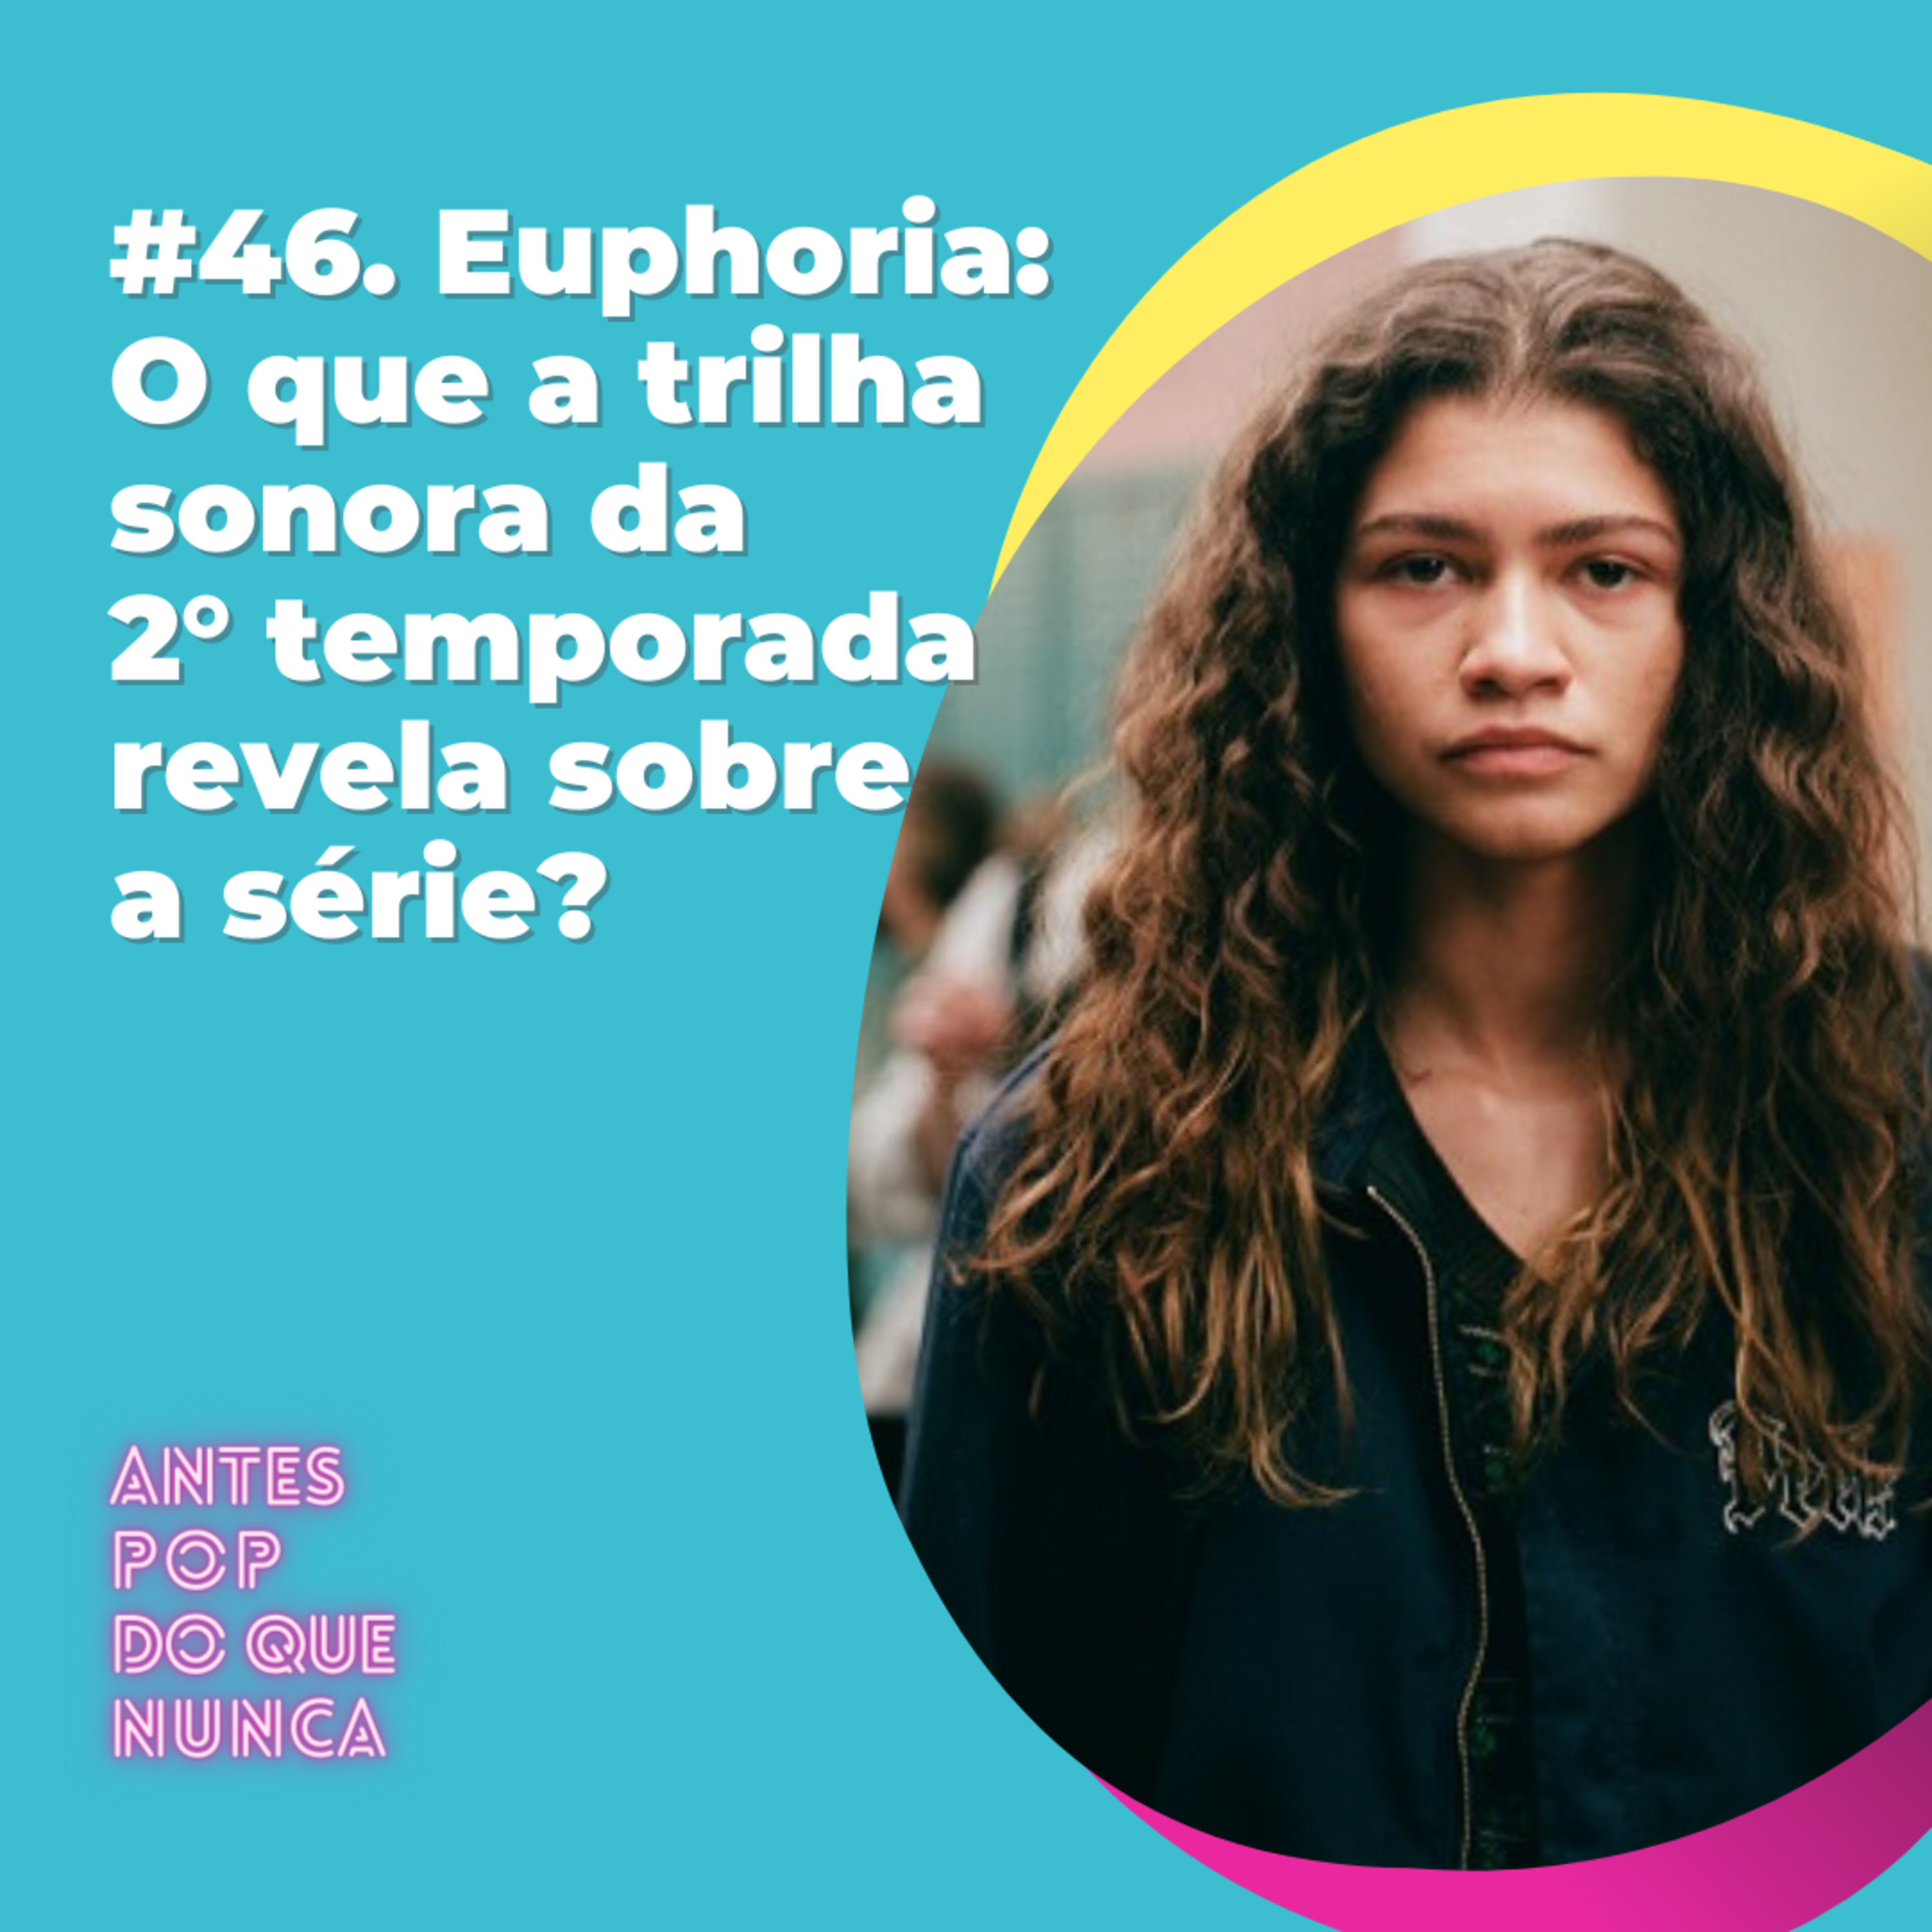 #46. Euphoria: O que a trilha sonora da 2° temporada revela sobre a série?